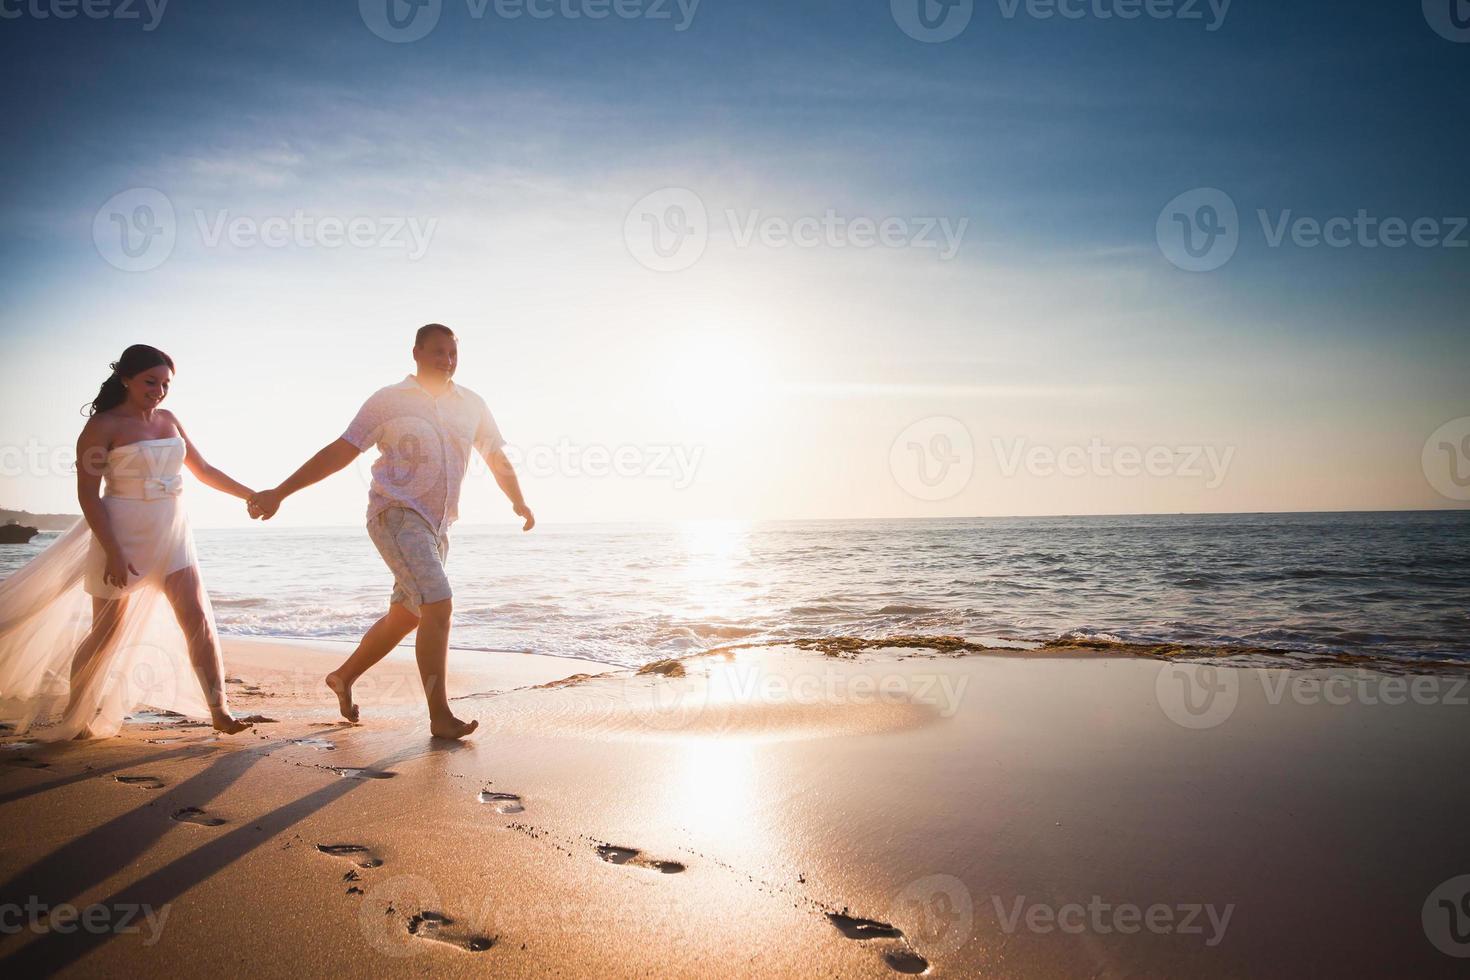 casais em lua de mel recém casados correndo na praia foto